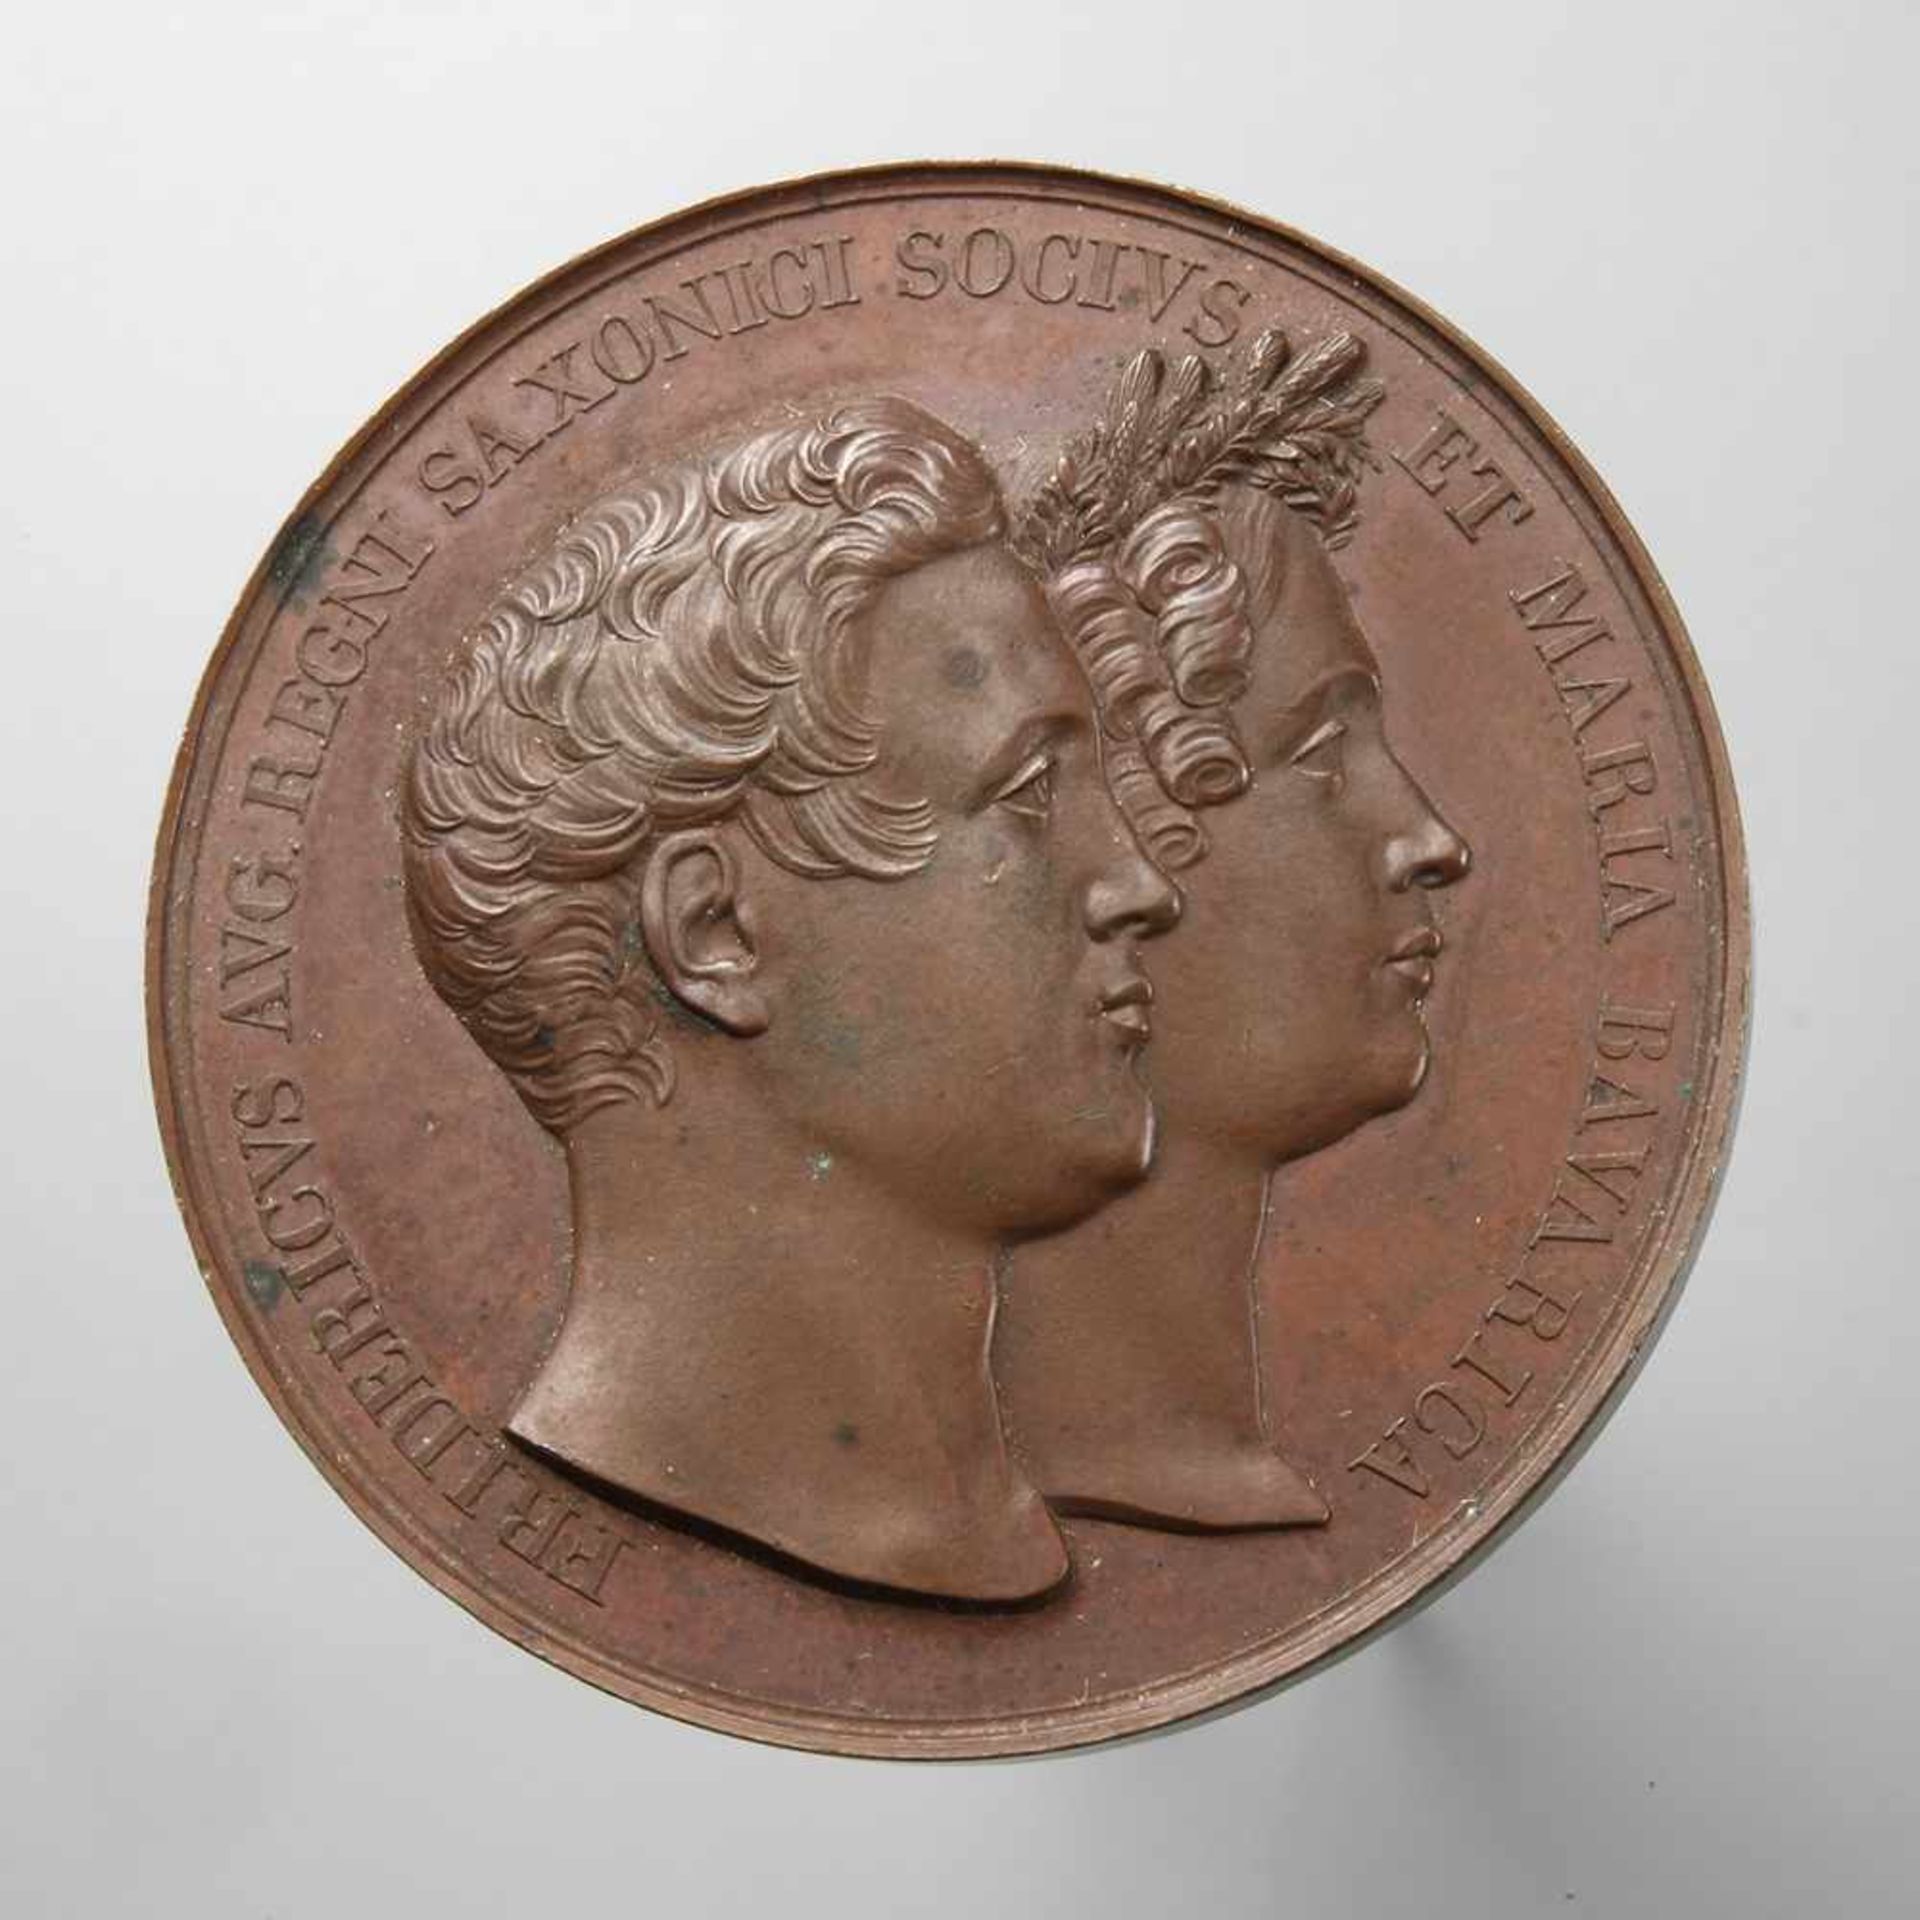 Hochzeitsmedaille Sachsen 1833Fridericus Aug. Regni Saxonici Socius et Maria Bavarica, Bildseite mit